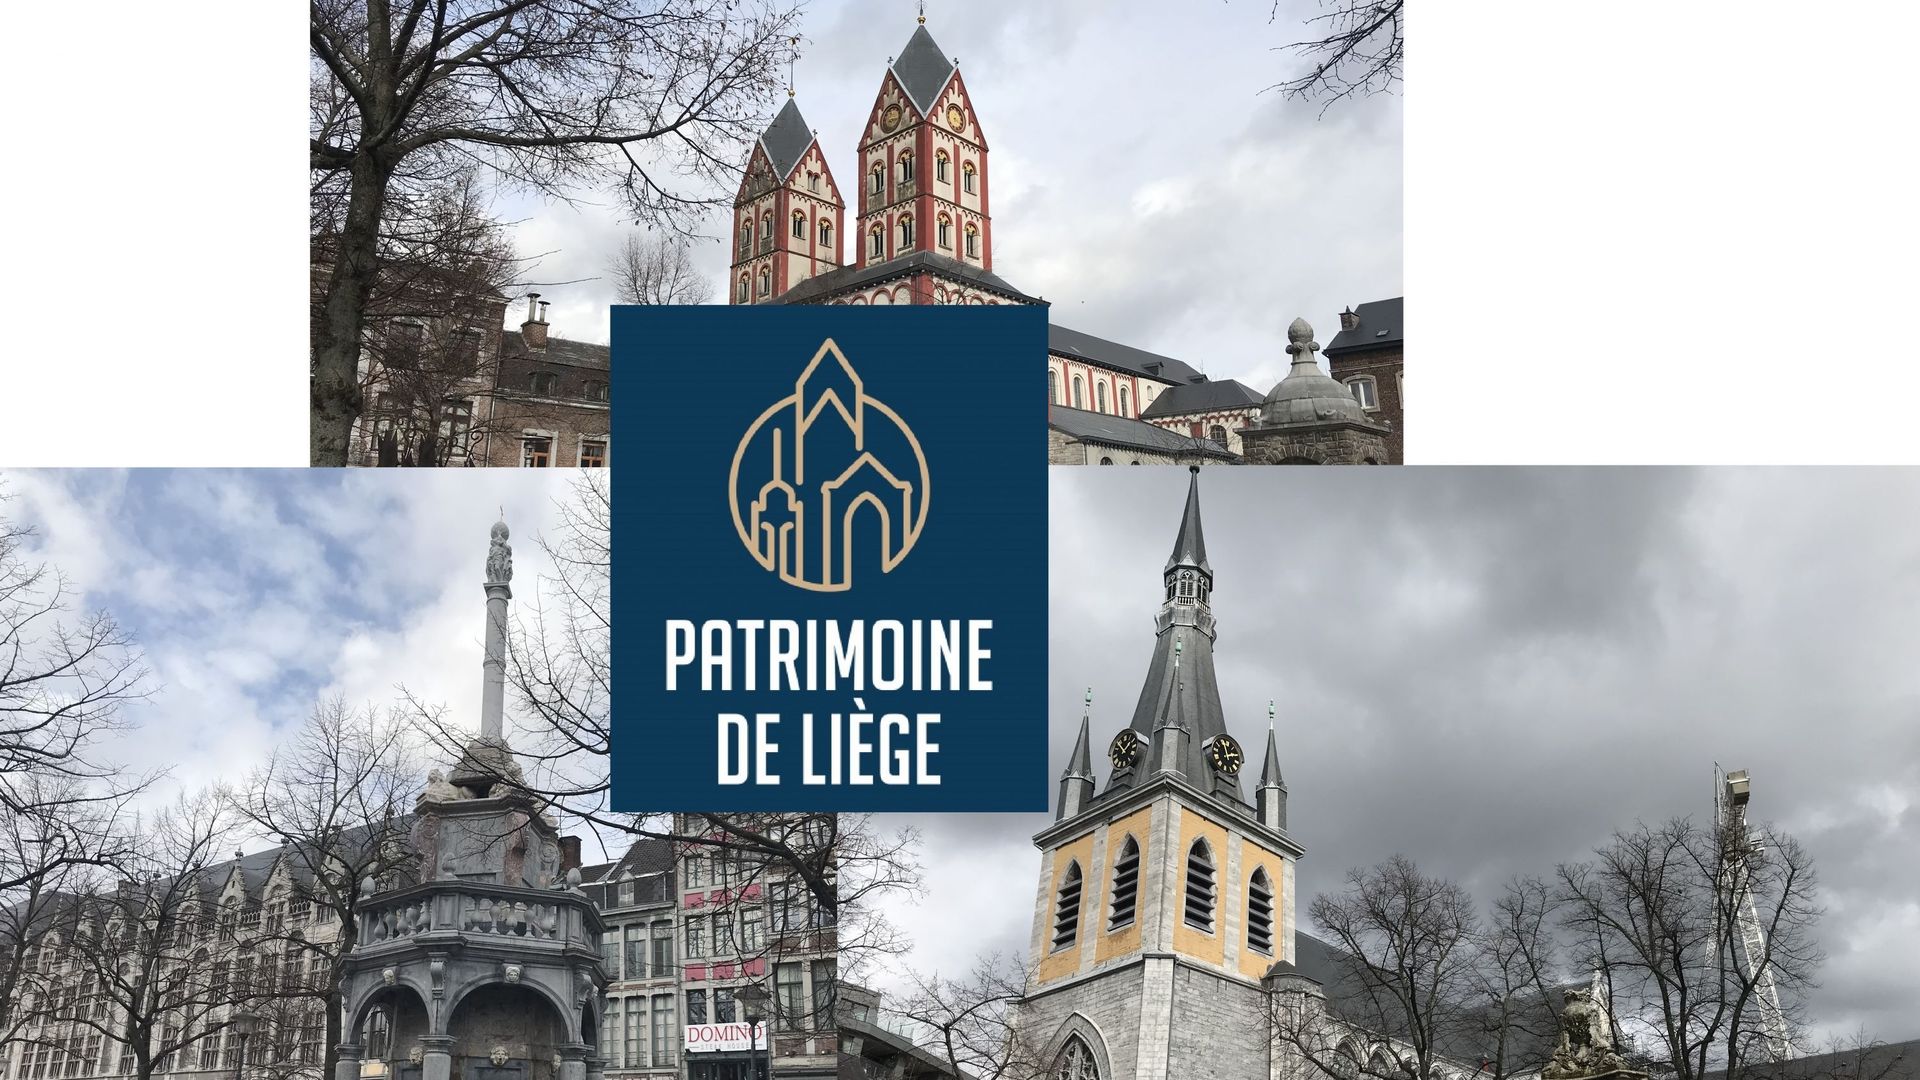 Le nouveau logo "patrimoine" de la Ville de Liège et les édifices qui y sont symbolisés (la collégiale Saint-Barthélemy, le Perron et la cathédrale Saint-Paul)